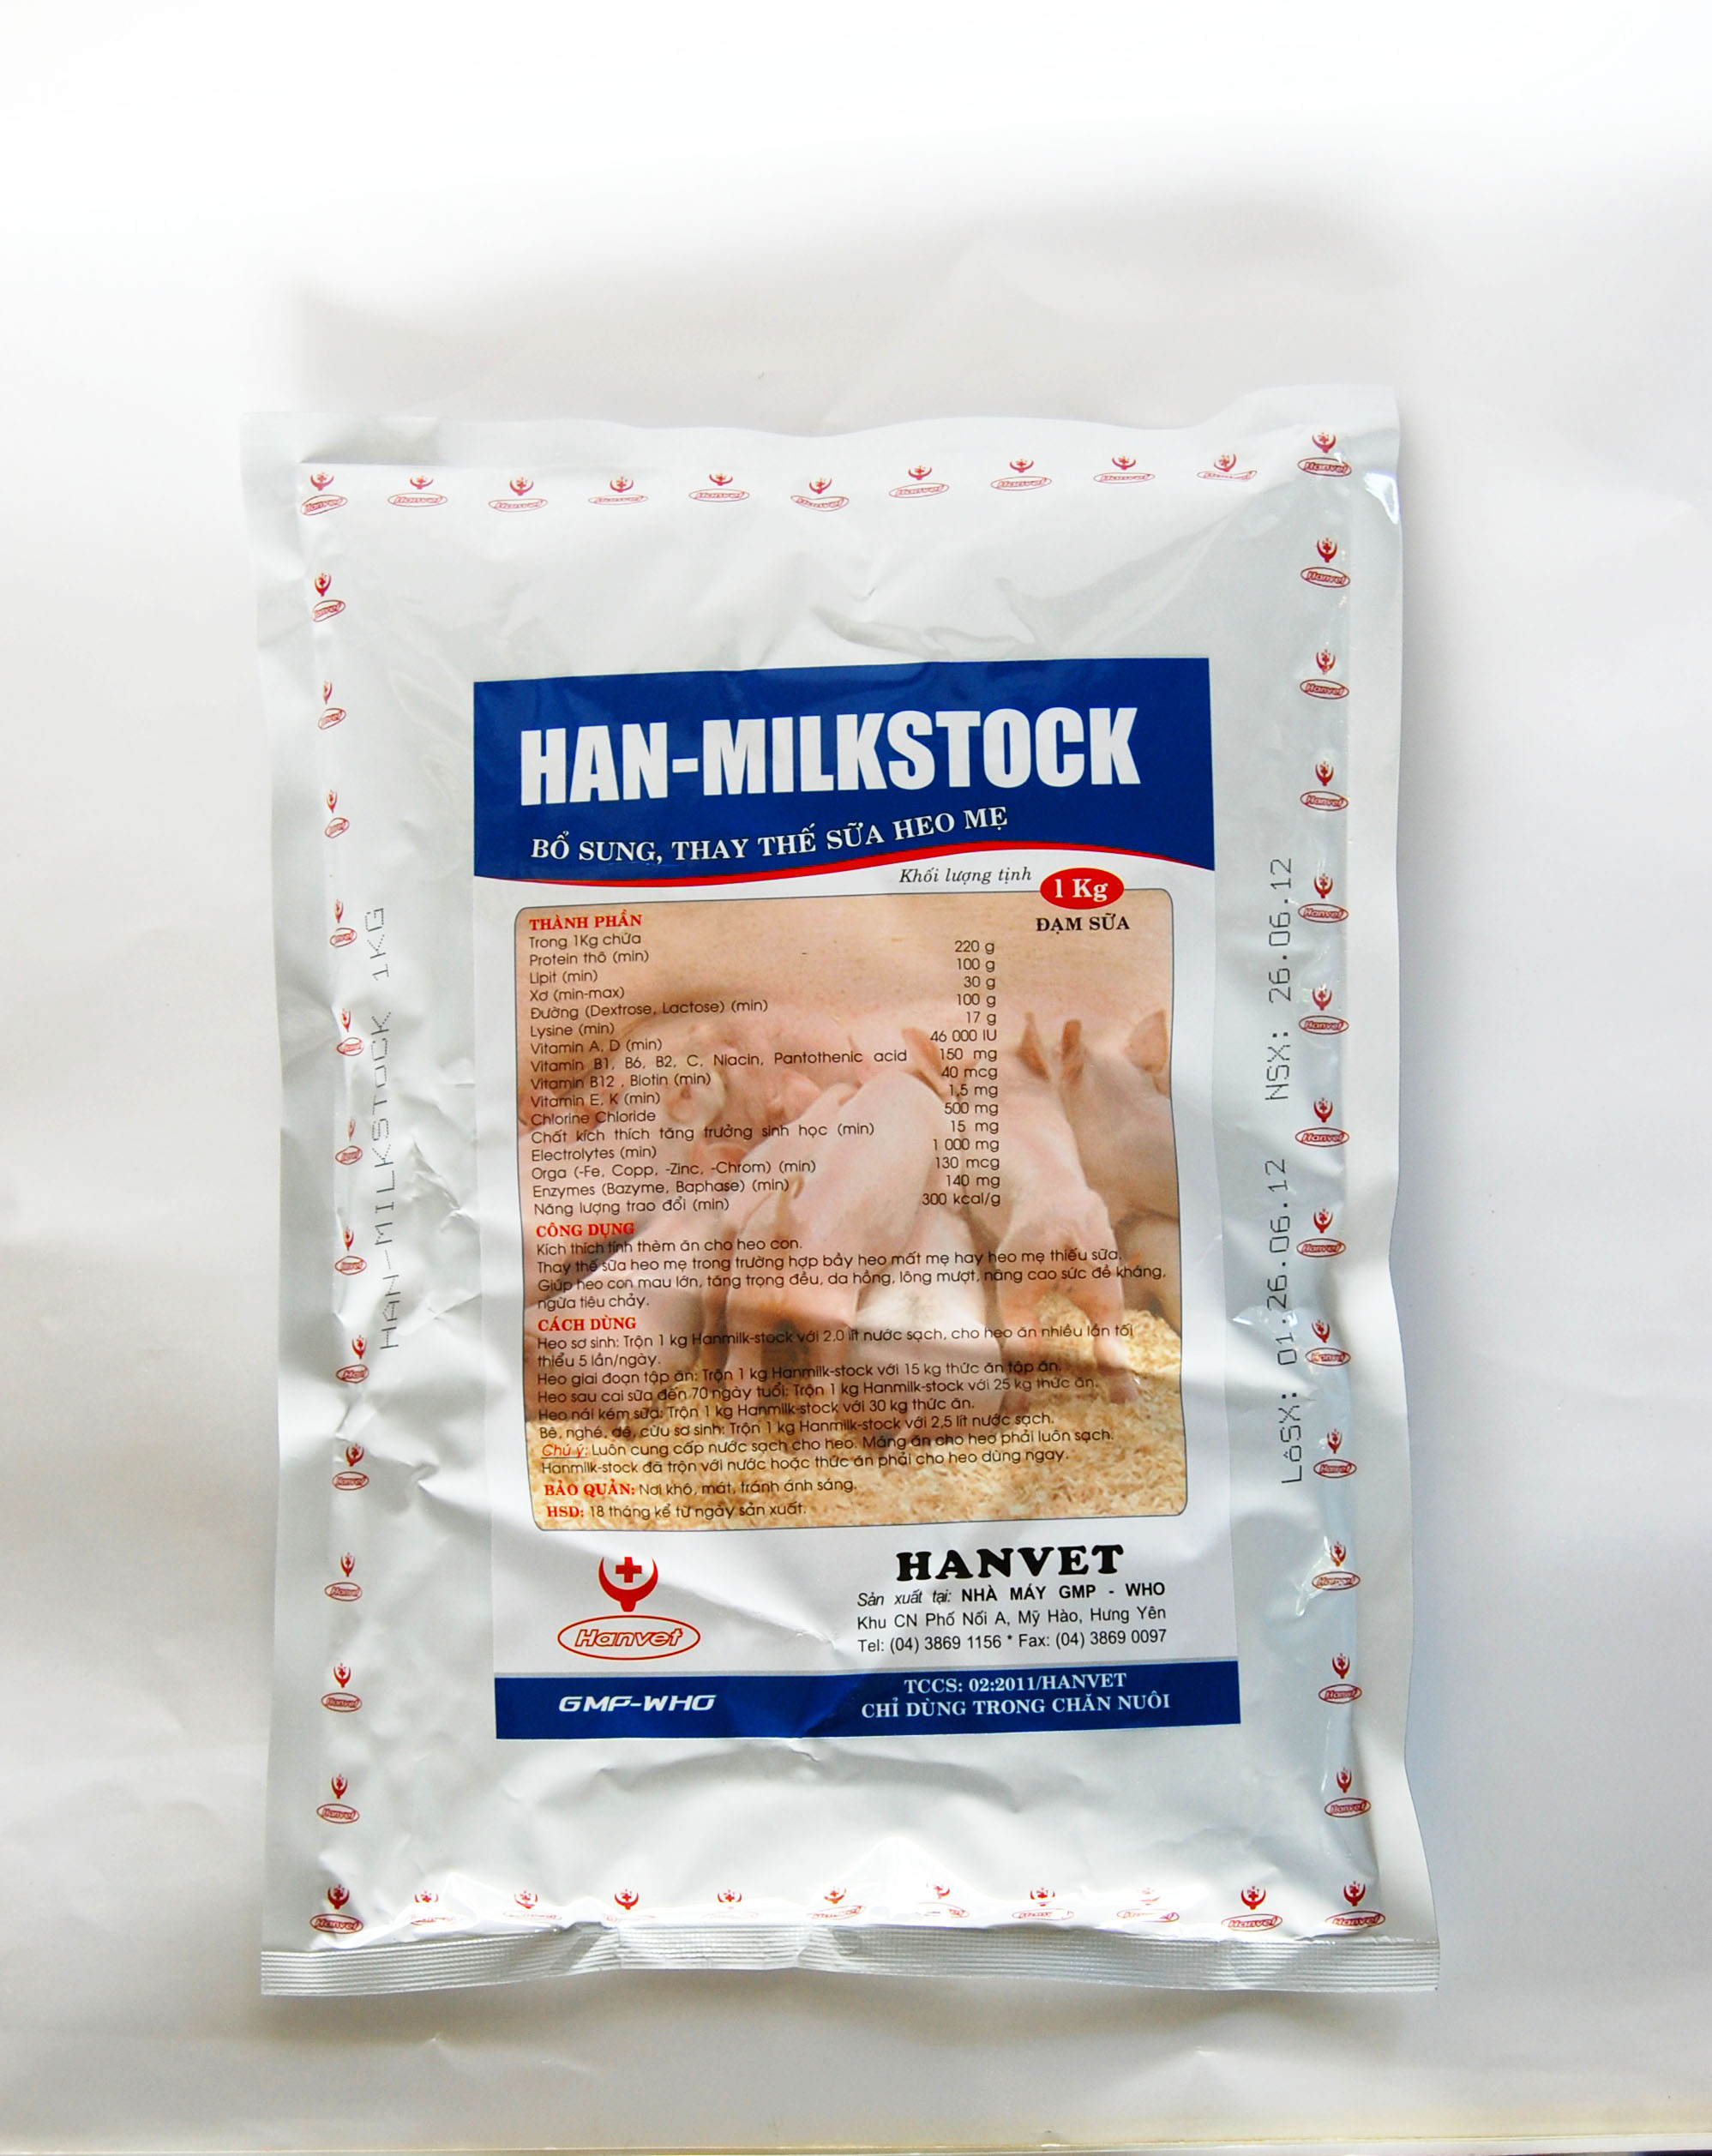 Han-milkstock